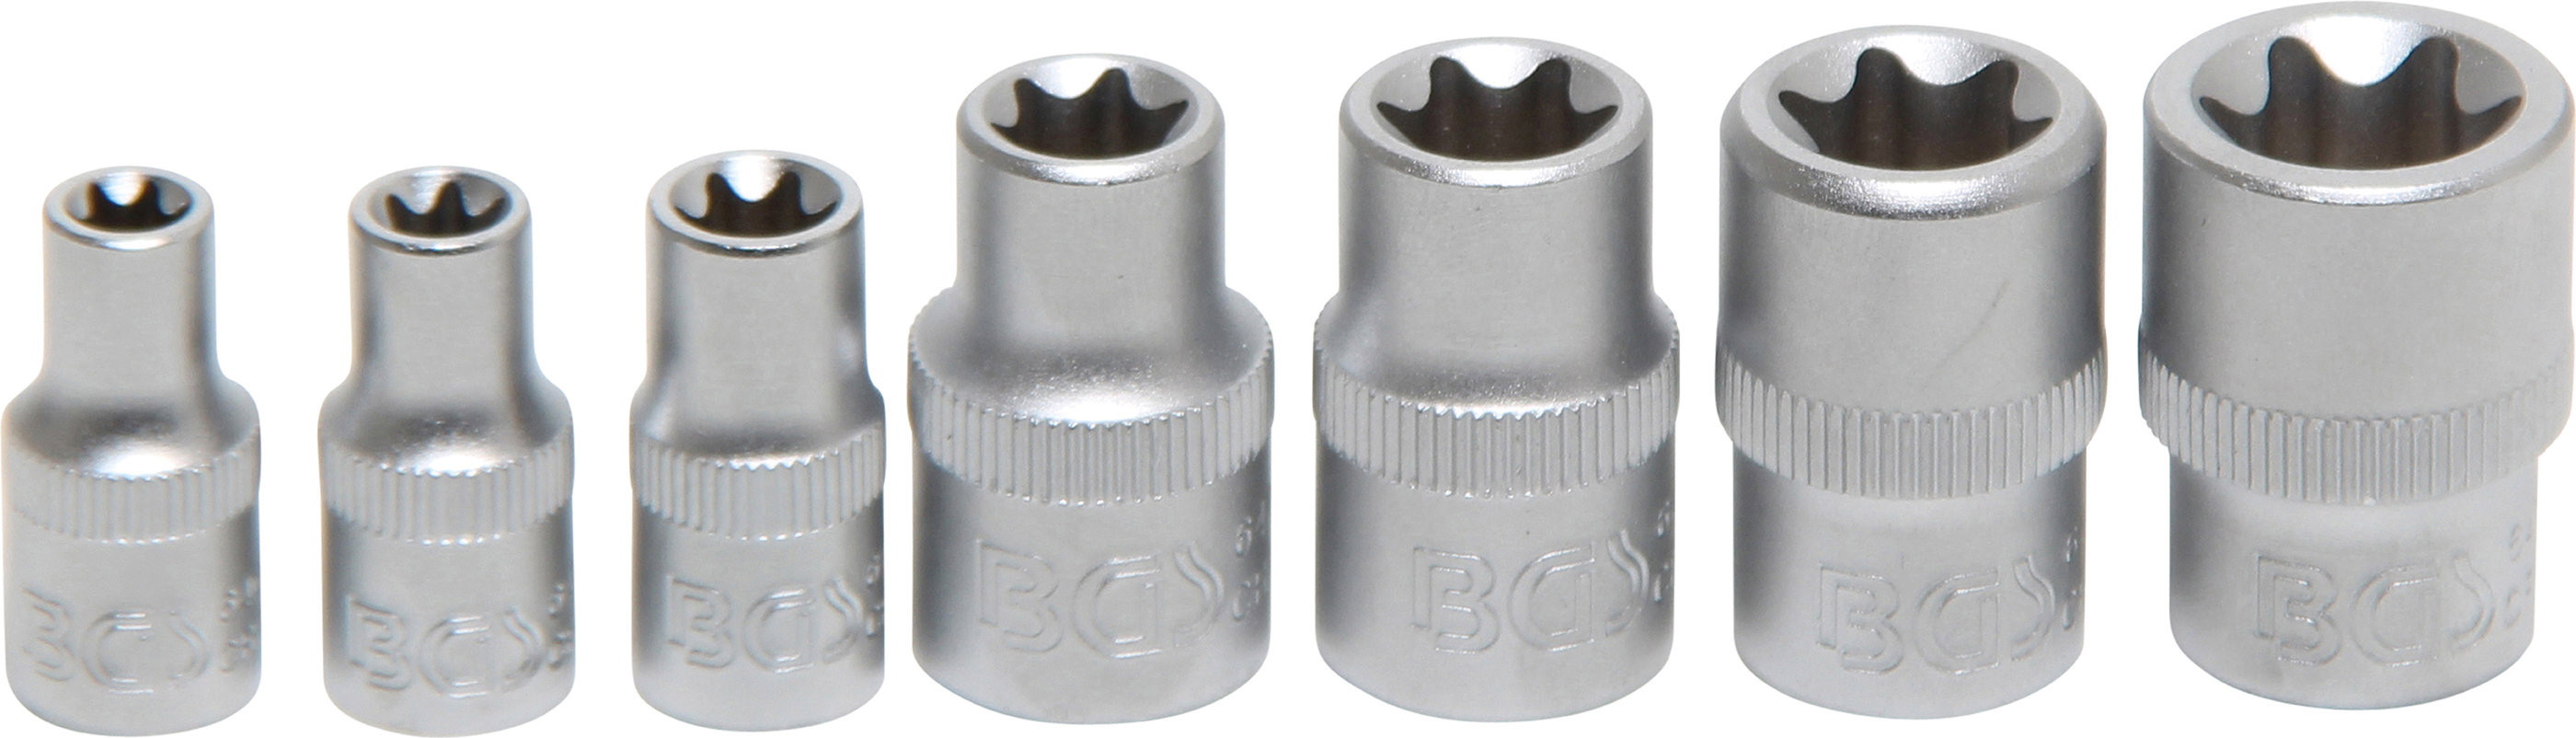 BGS Steckschlüssel-Einsatz-Satz E-Profil | Antrieb Innenvierkant 6,3 mm (1/4") / 10 mm (3/8") | SW E6 - E16 | 7 tlg.